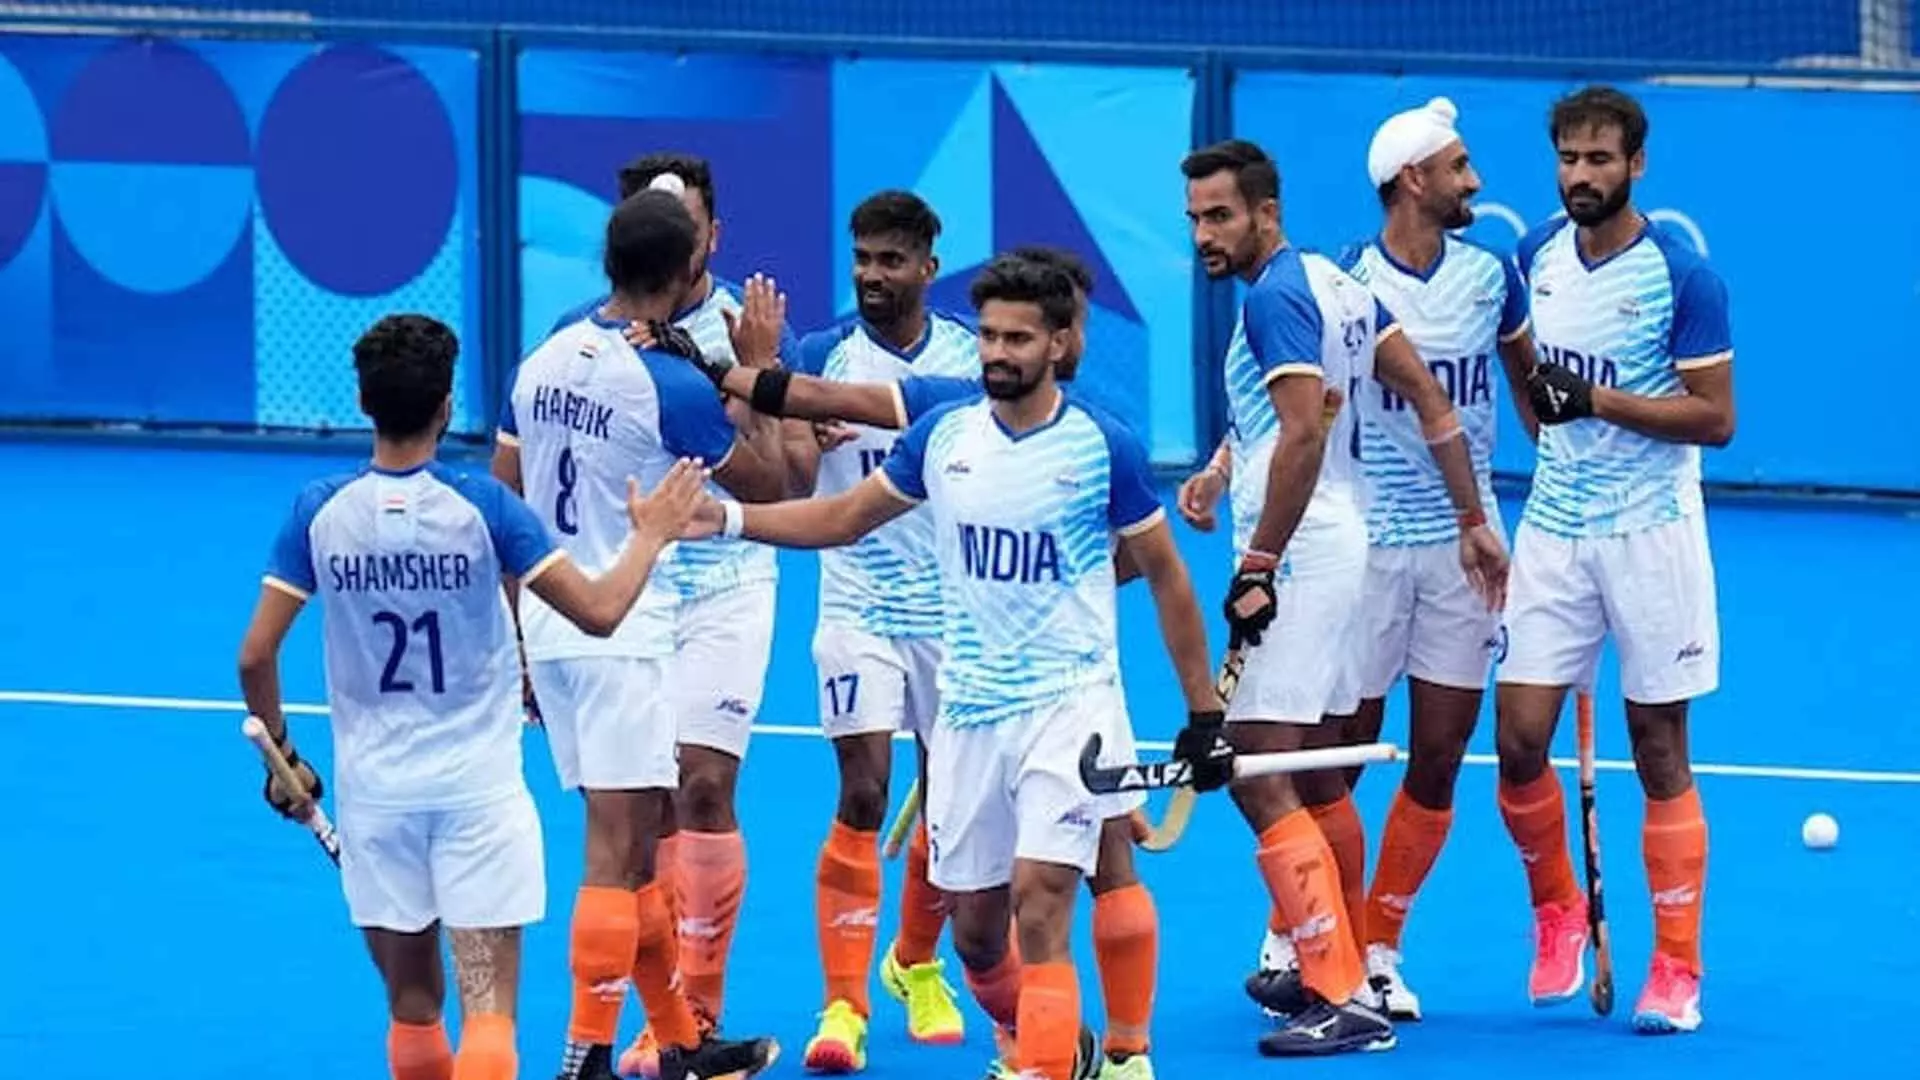 Indian की पुरुष हॉकी टीम ने पेरिस ओलंपिक रोमांचक जीत हासिल की